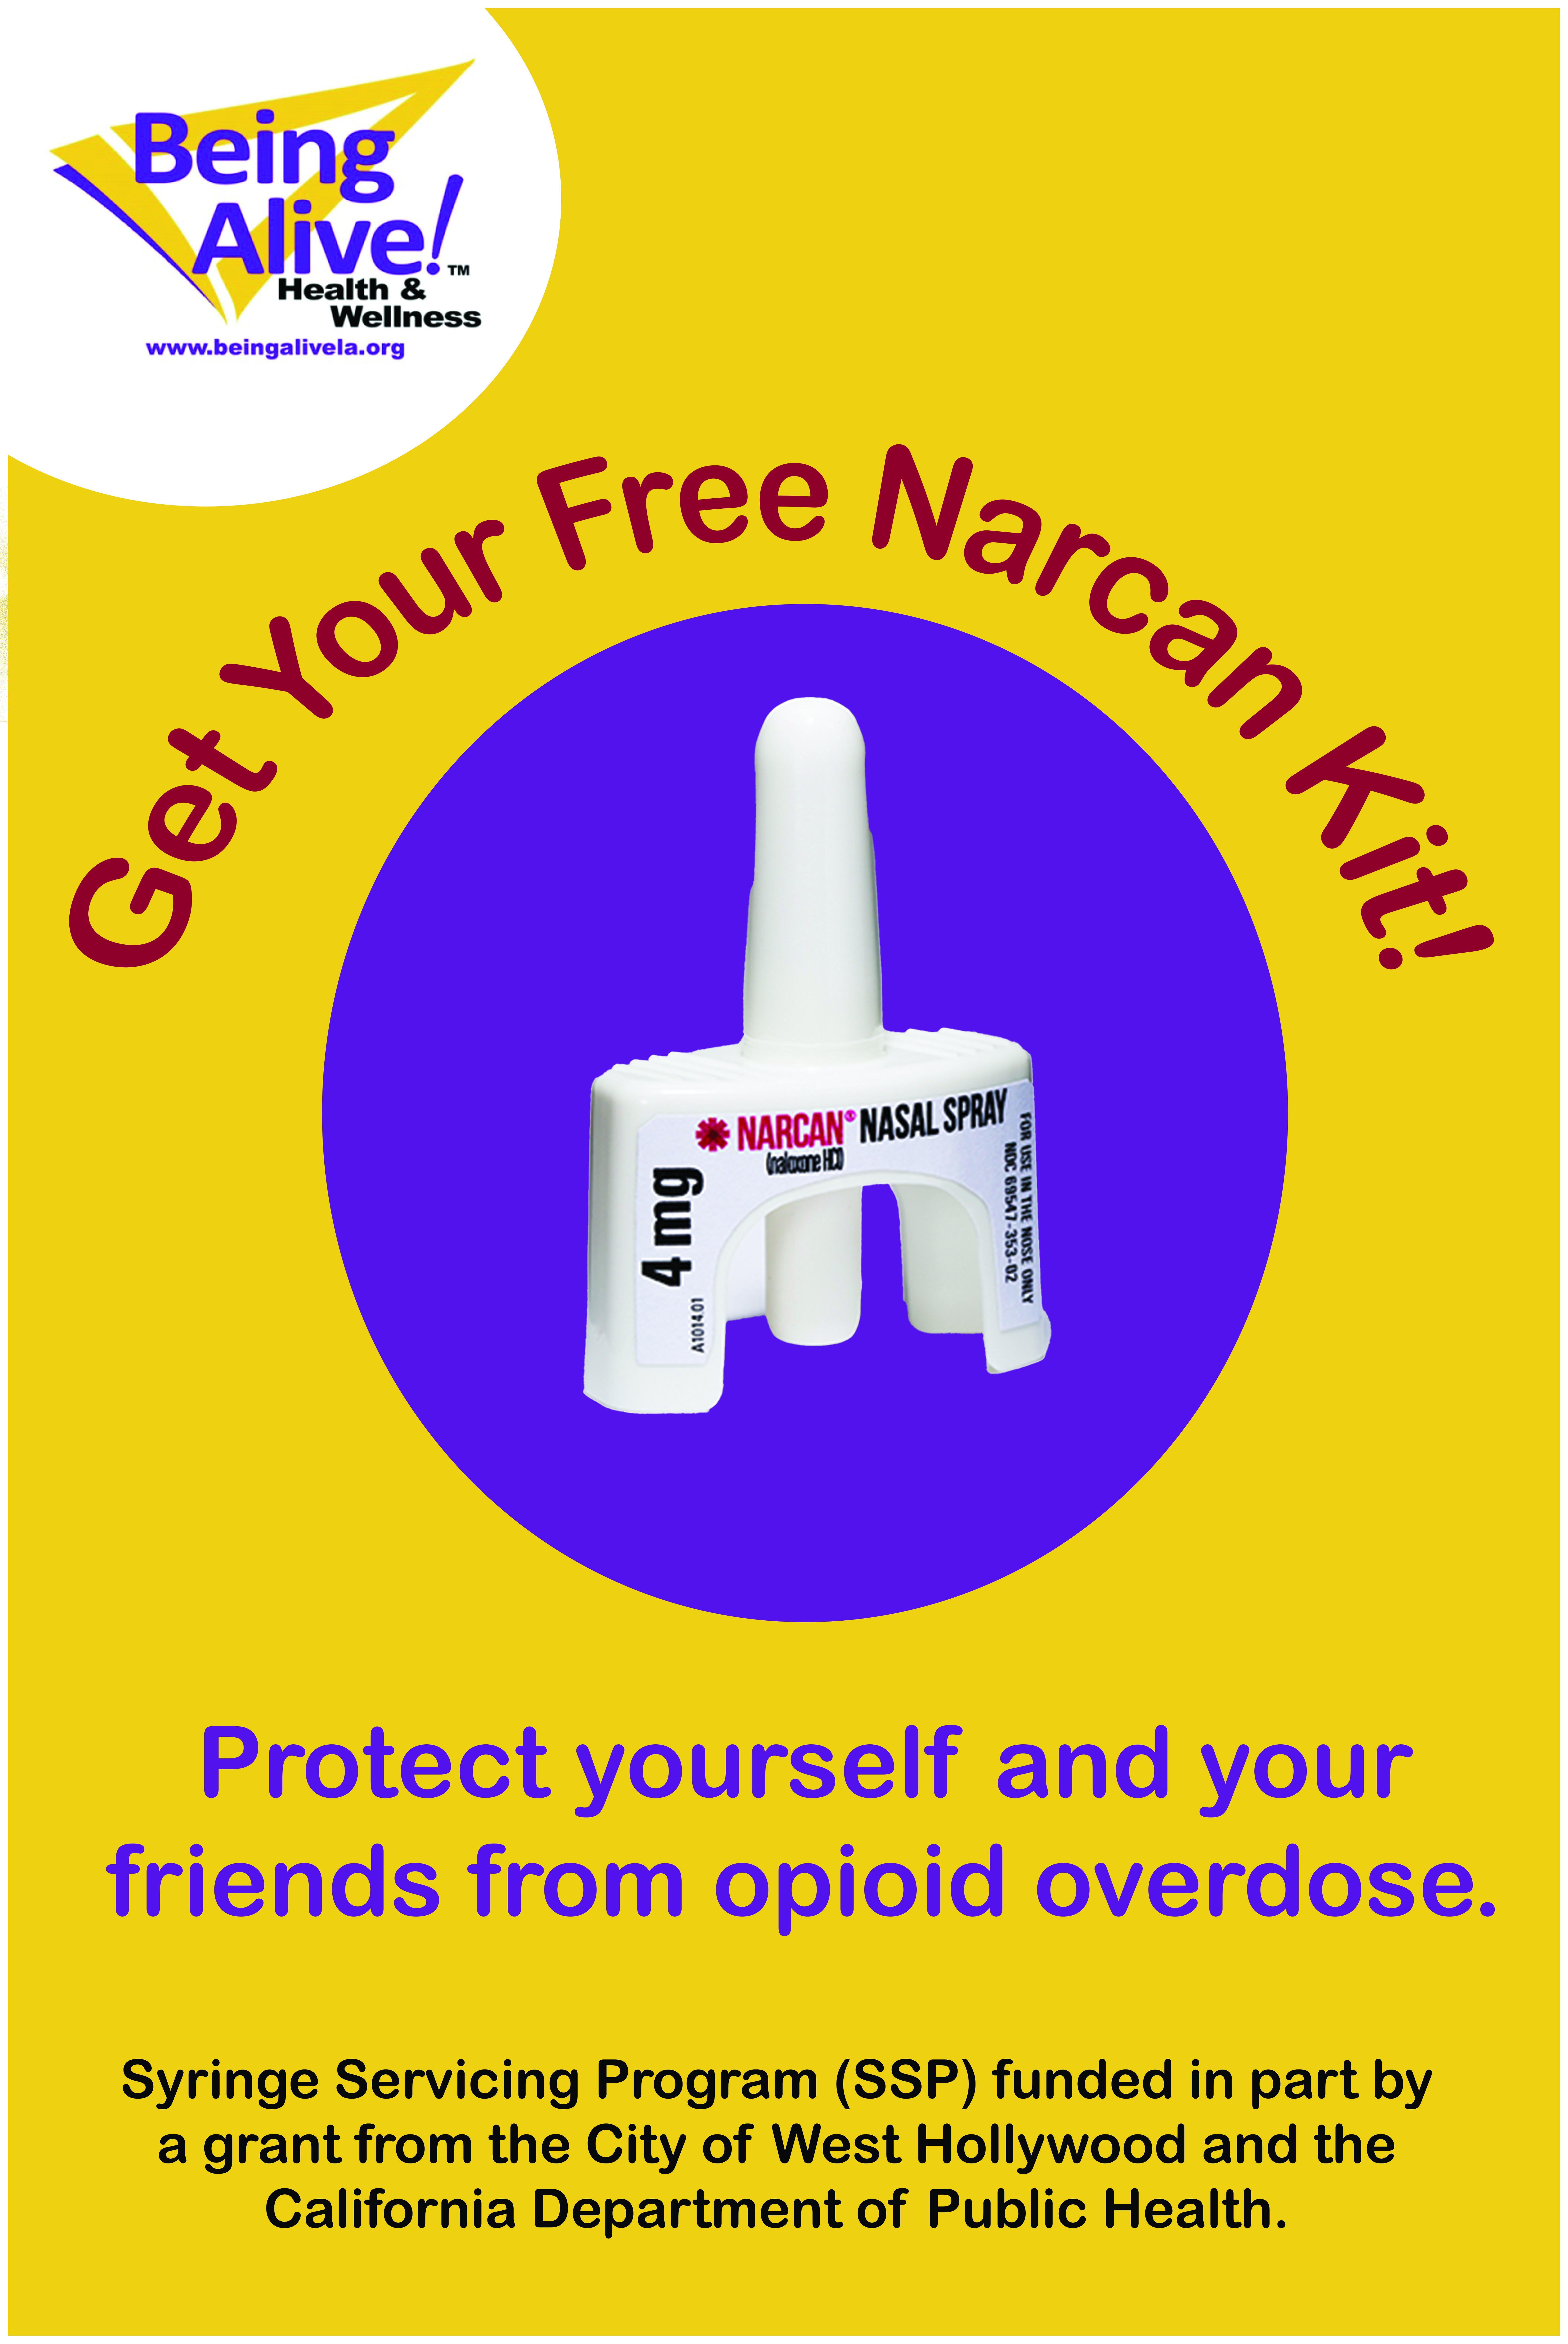 Narcam Kit Image